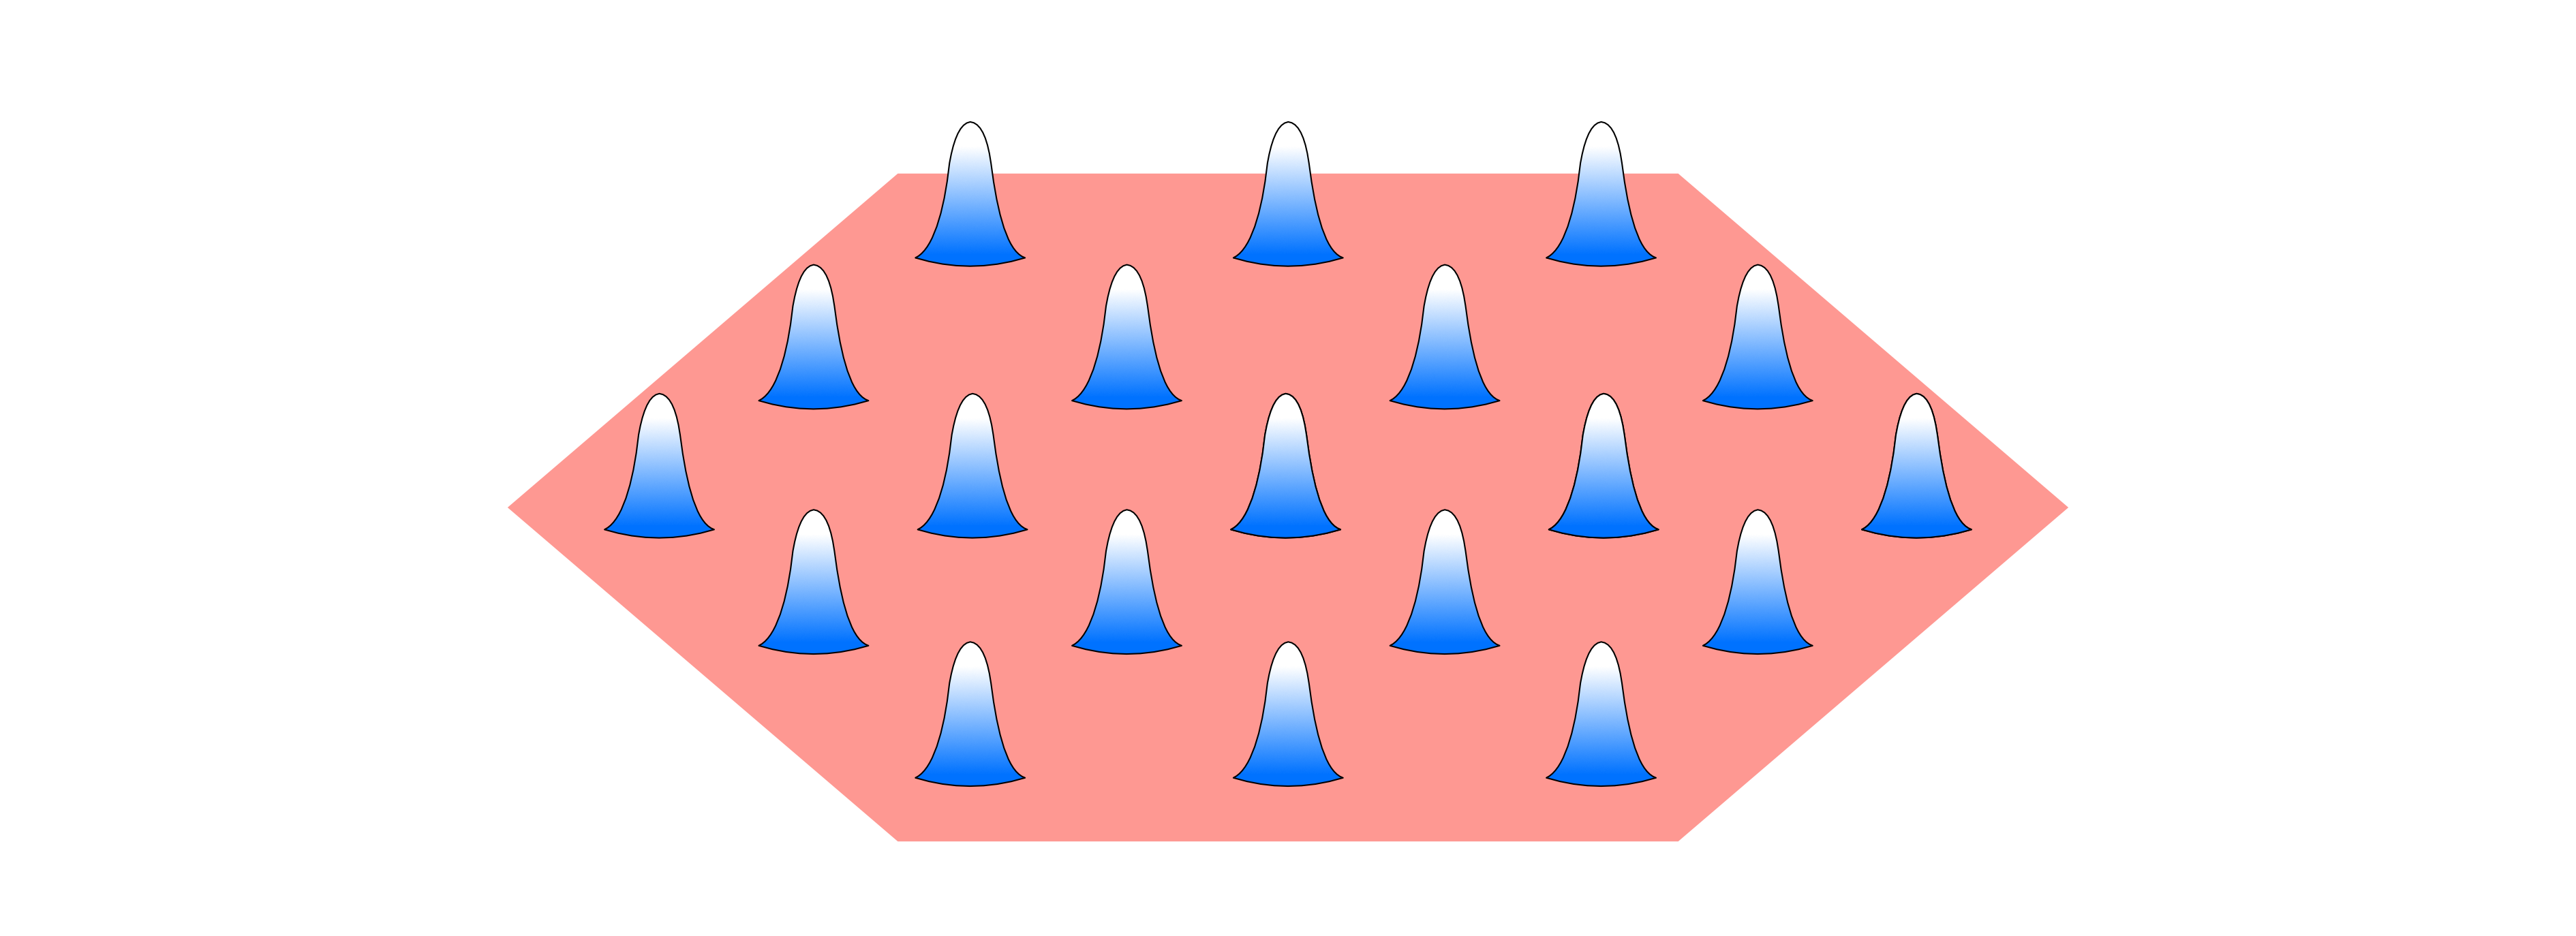 Een twee-dimensionaal Wigner-kristal, waarbij elektronen lokaliseren vanwege de Coulomb-interactie